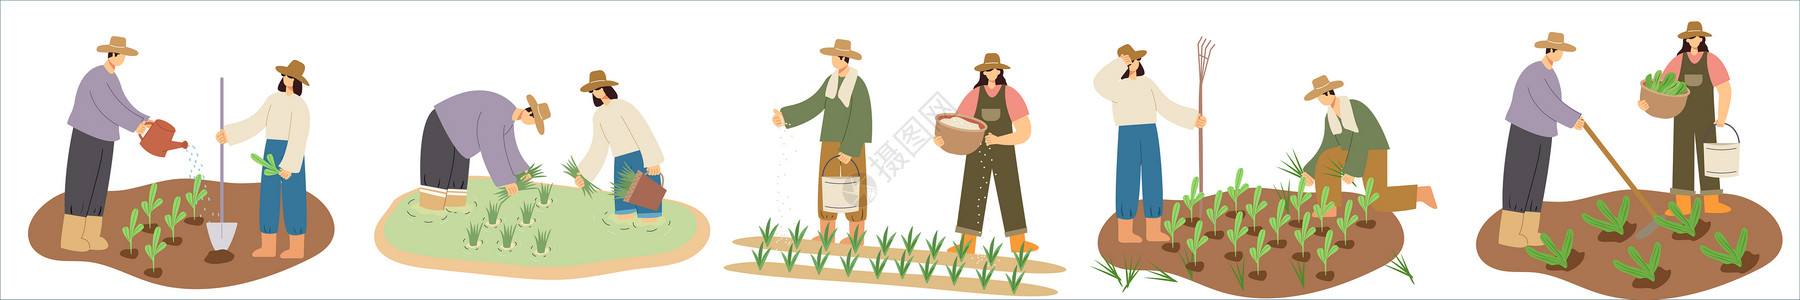 劳动节人物农民耕种场景svg矢量插画元素高清图片